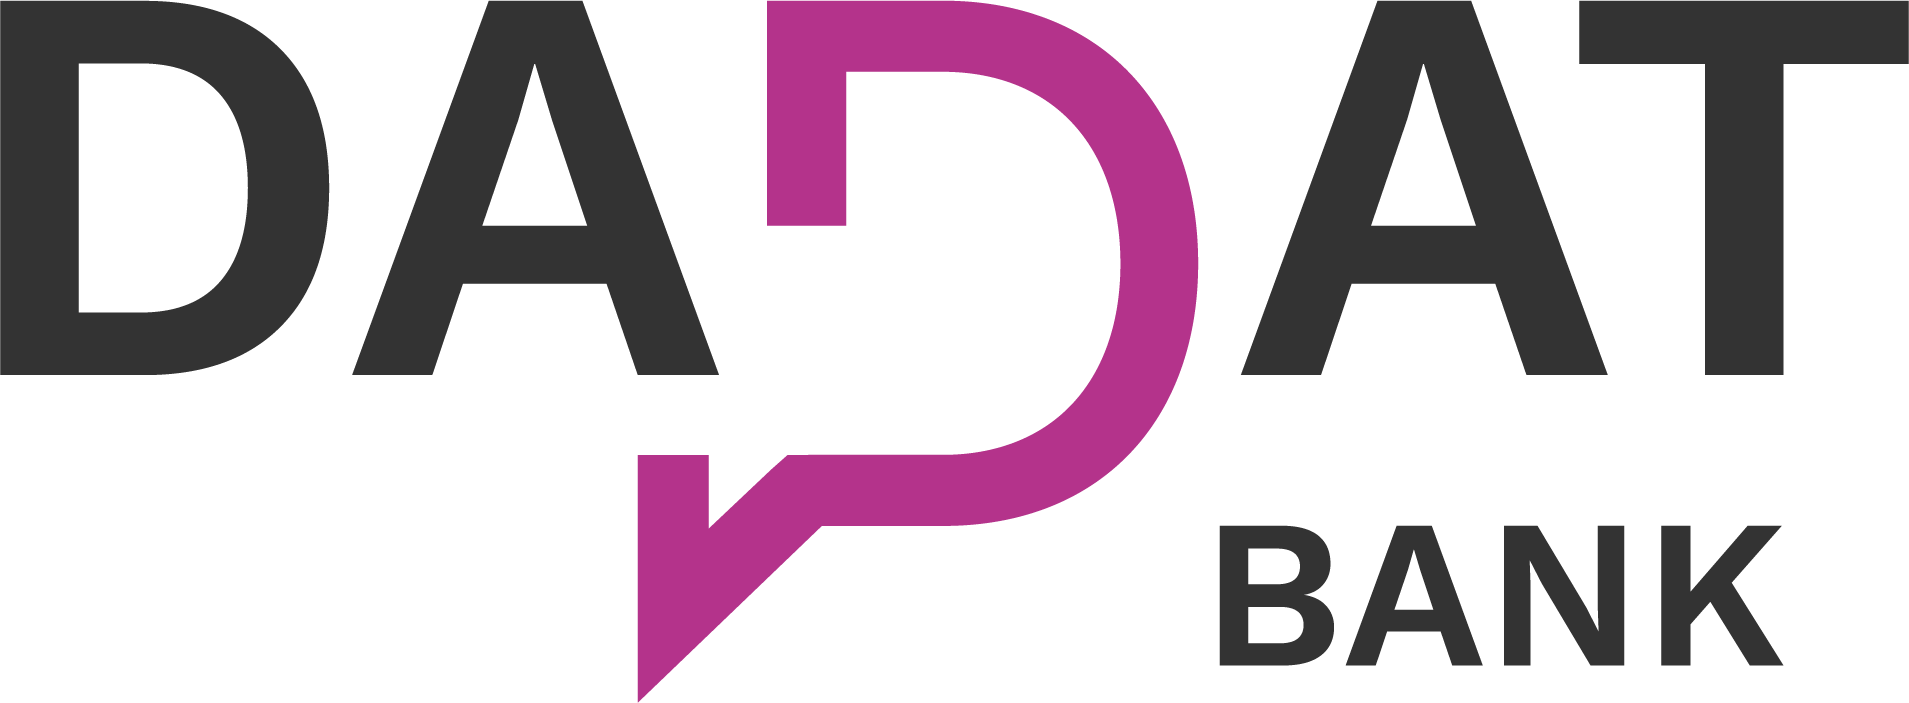 DADAT_Bank_Logo_RGB